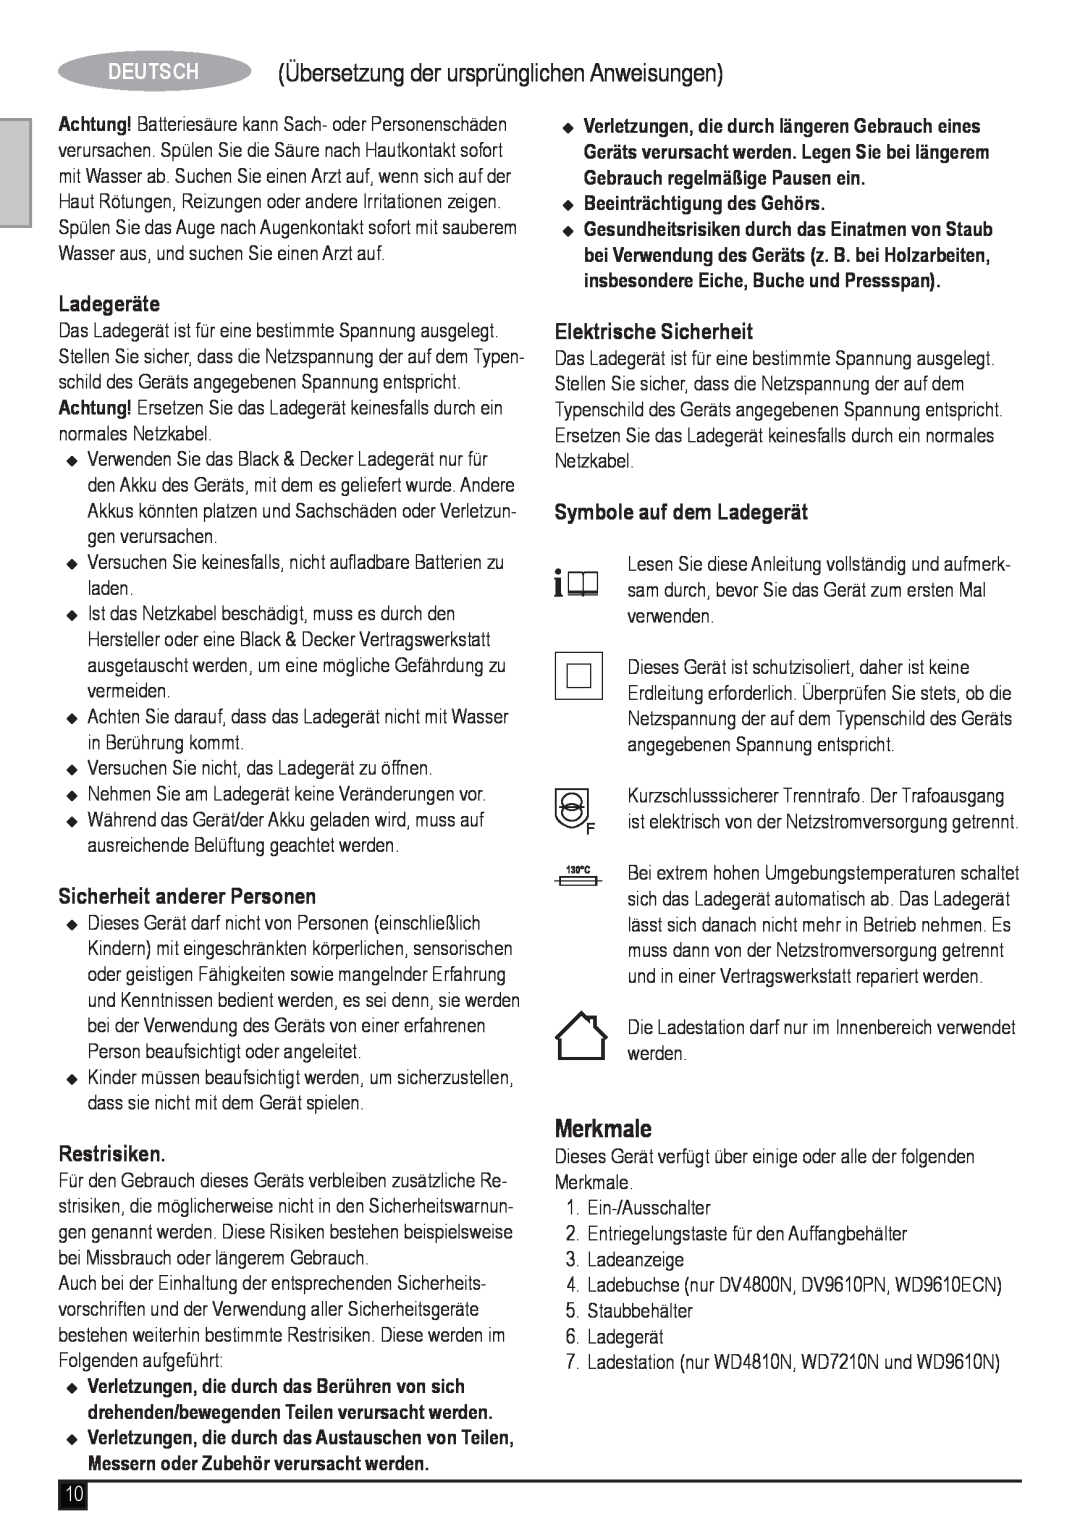 Black & Decker WD4810N manual Übersetzung der ursprünglichen Anweisungen, Merkmale, Ladegeräte, Sicherheit anderer Personen 